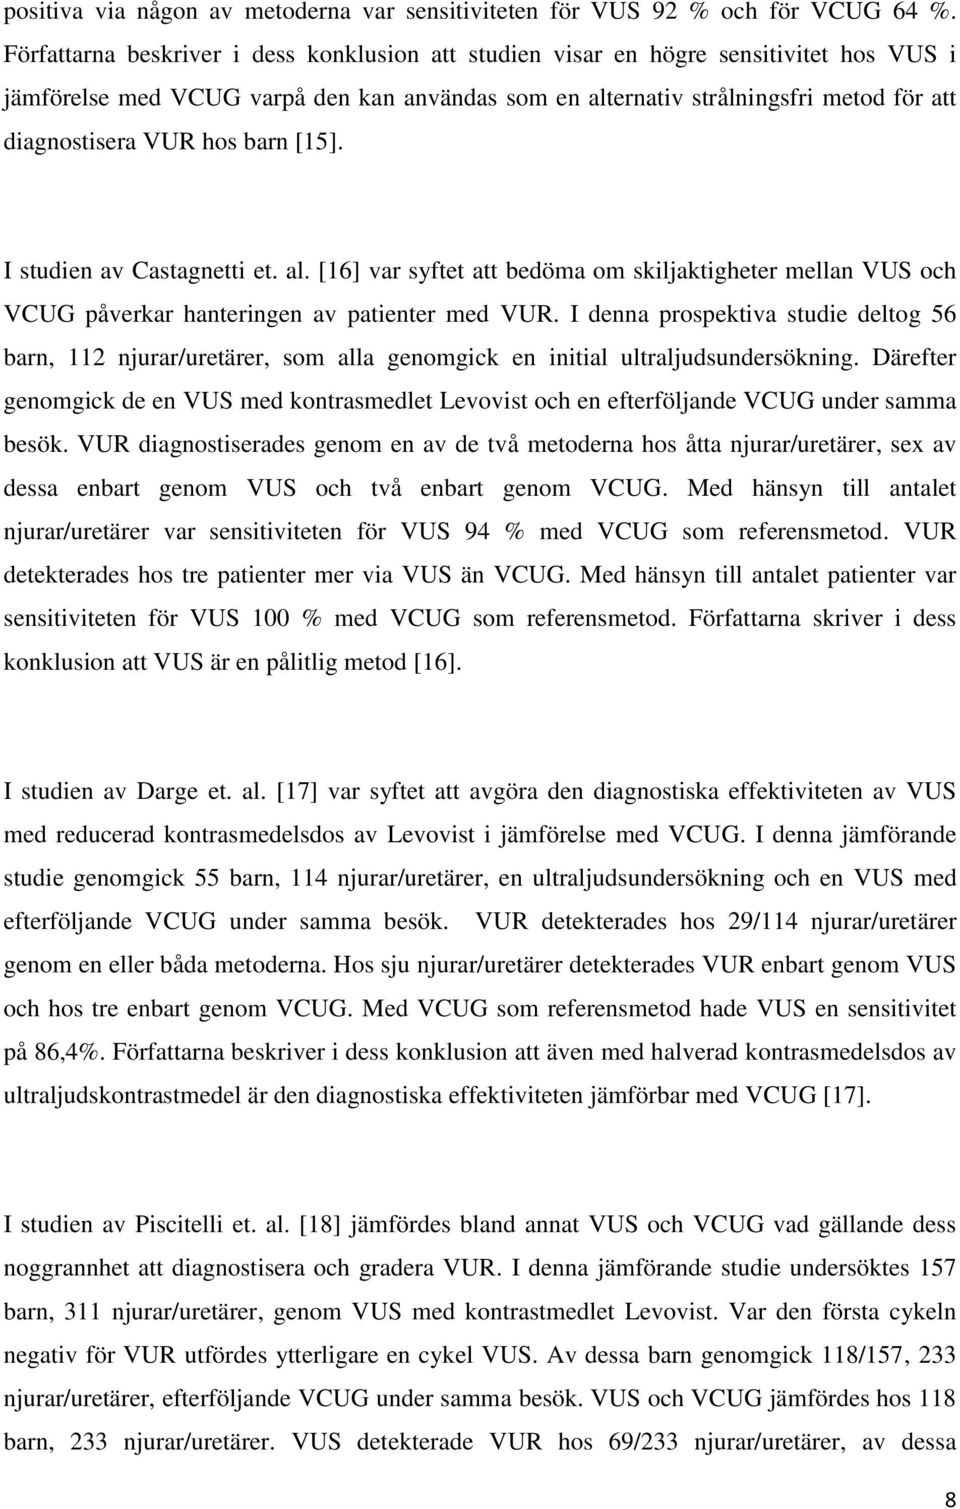 hos barn [15]. I studien av Castagnetti et. al. [16] var syftet att bedöma om skiljaktigheter mellan VUS och VCUG påverkar hanteringen av patienter med VUR.